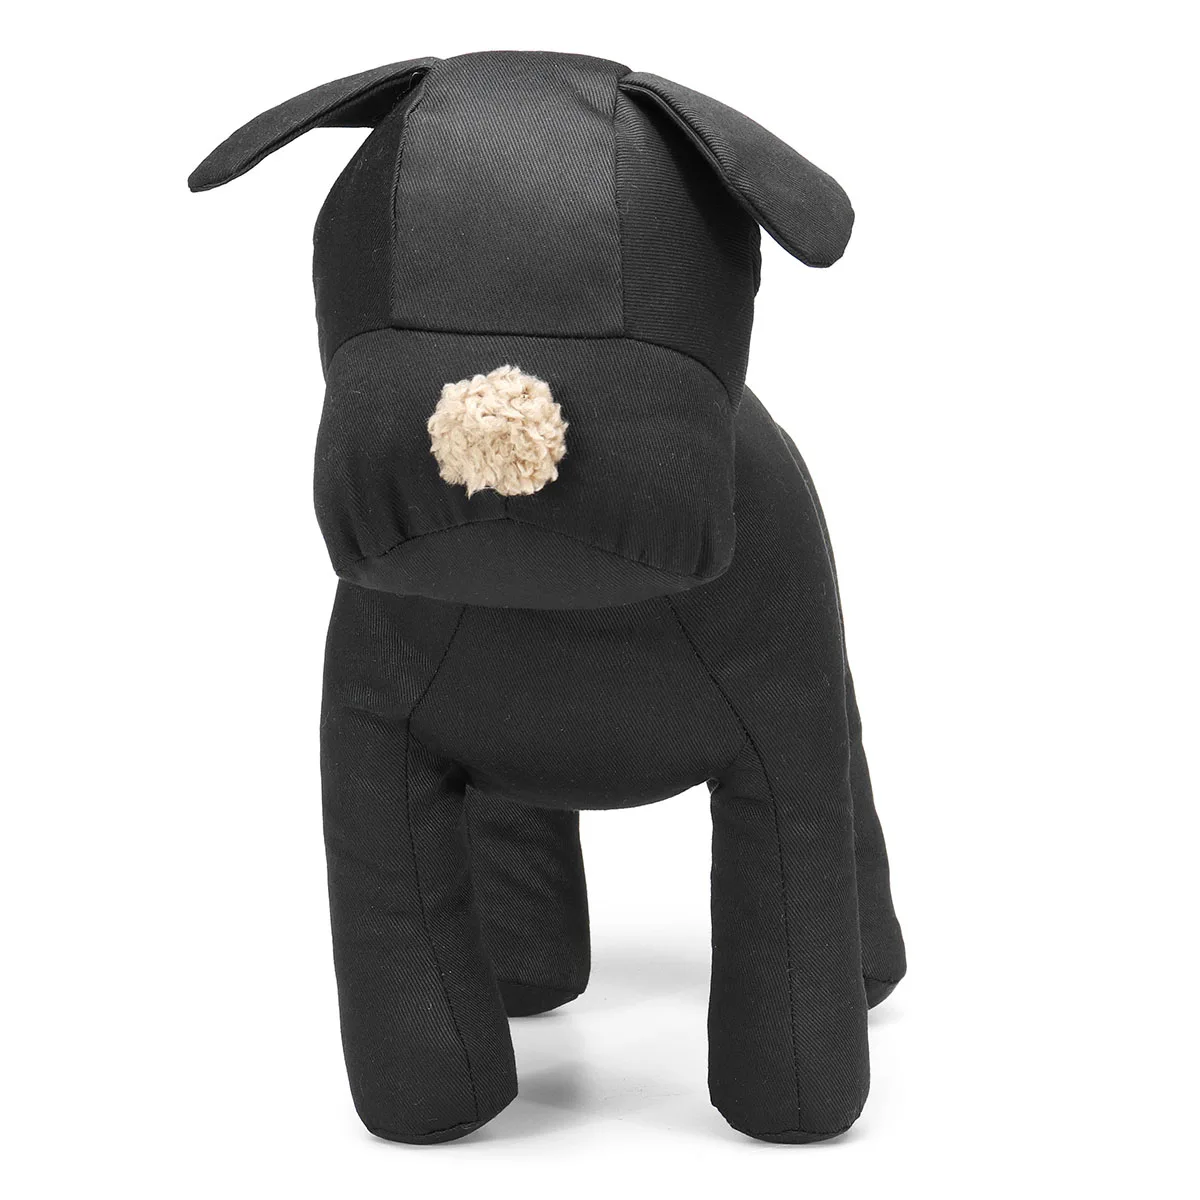 Черный/белый манекен собаки хлопок набивные модели одежды магазин Воротник дисплей игрушки для домашних животных отрегулированные ноги позы для розничного магазина